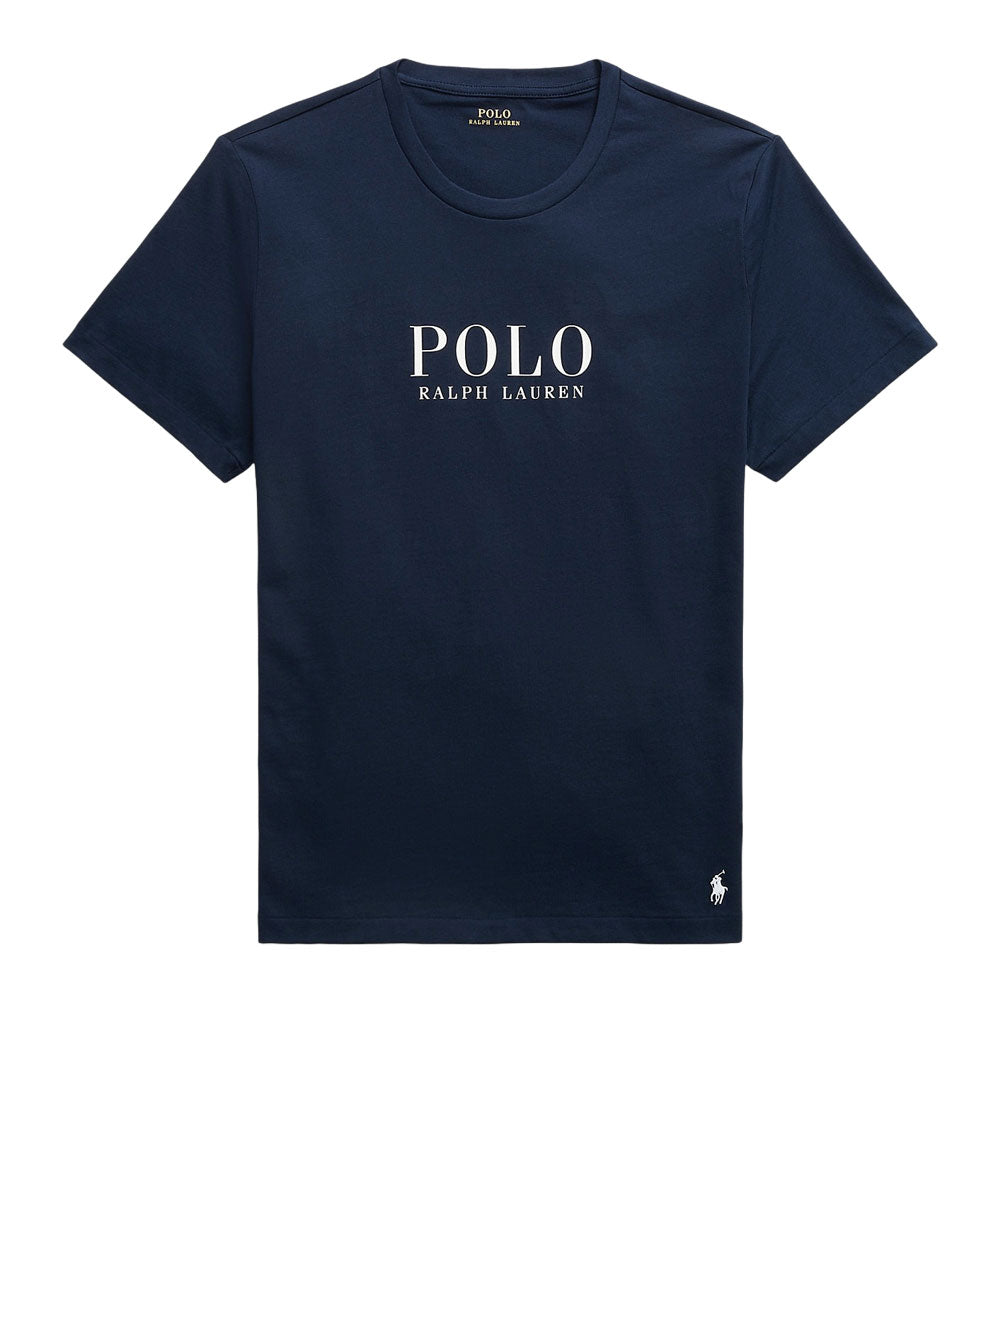 POLO RALPH LAUREN T-shirt Uomo - Blu